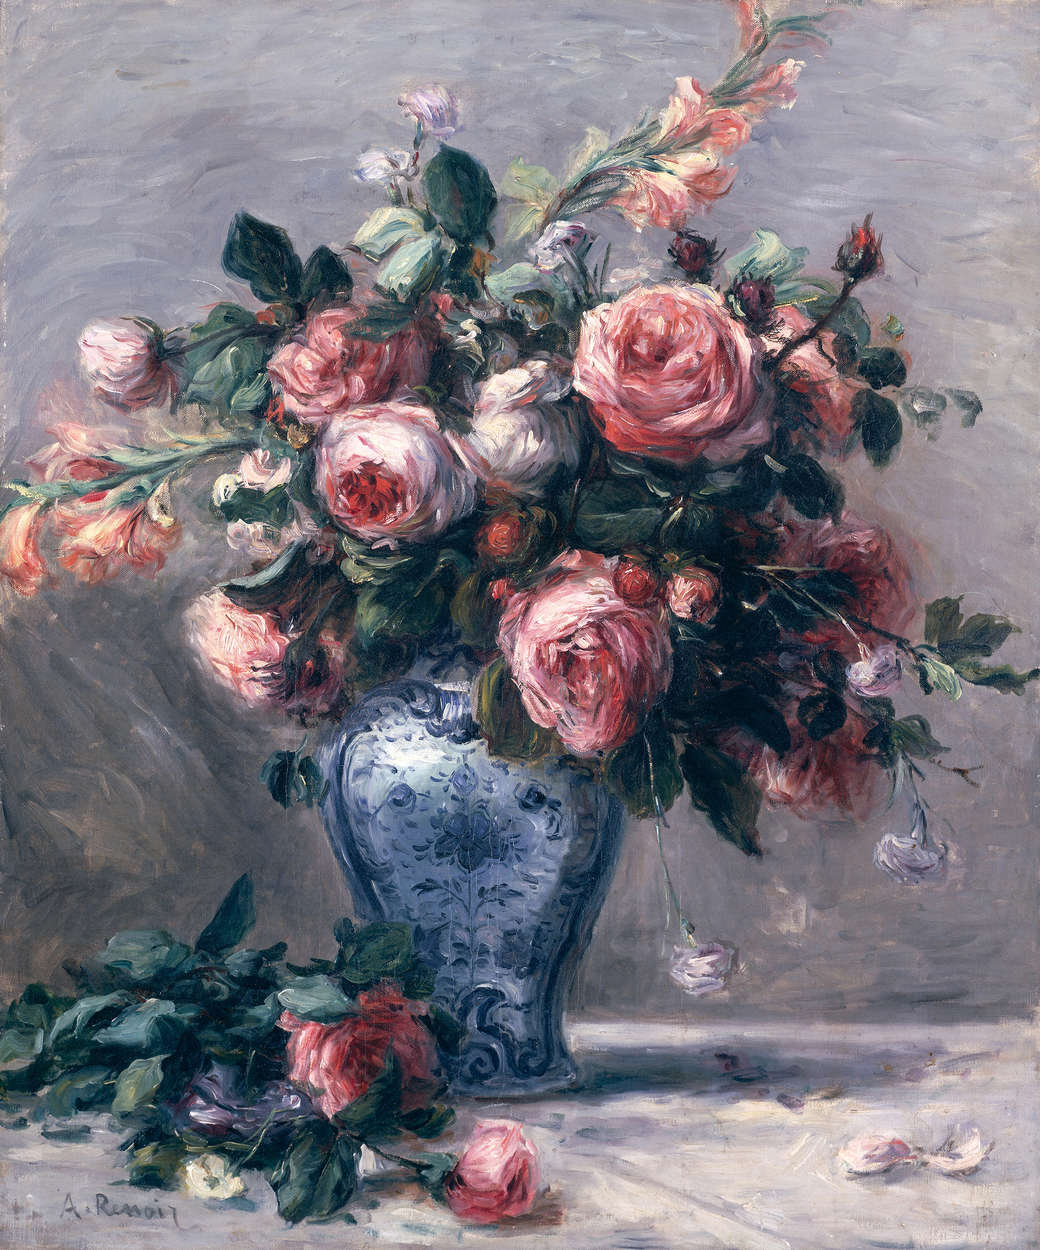             Roos in een vaas" muurschildering van Pierre Auguste Renoir
        